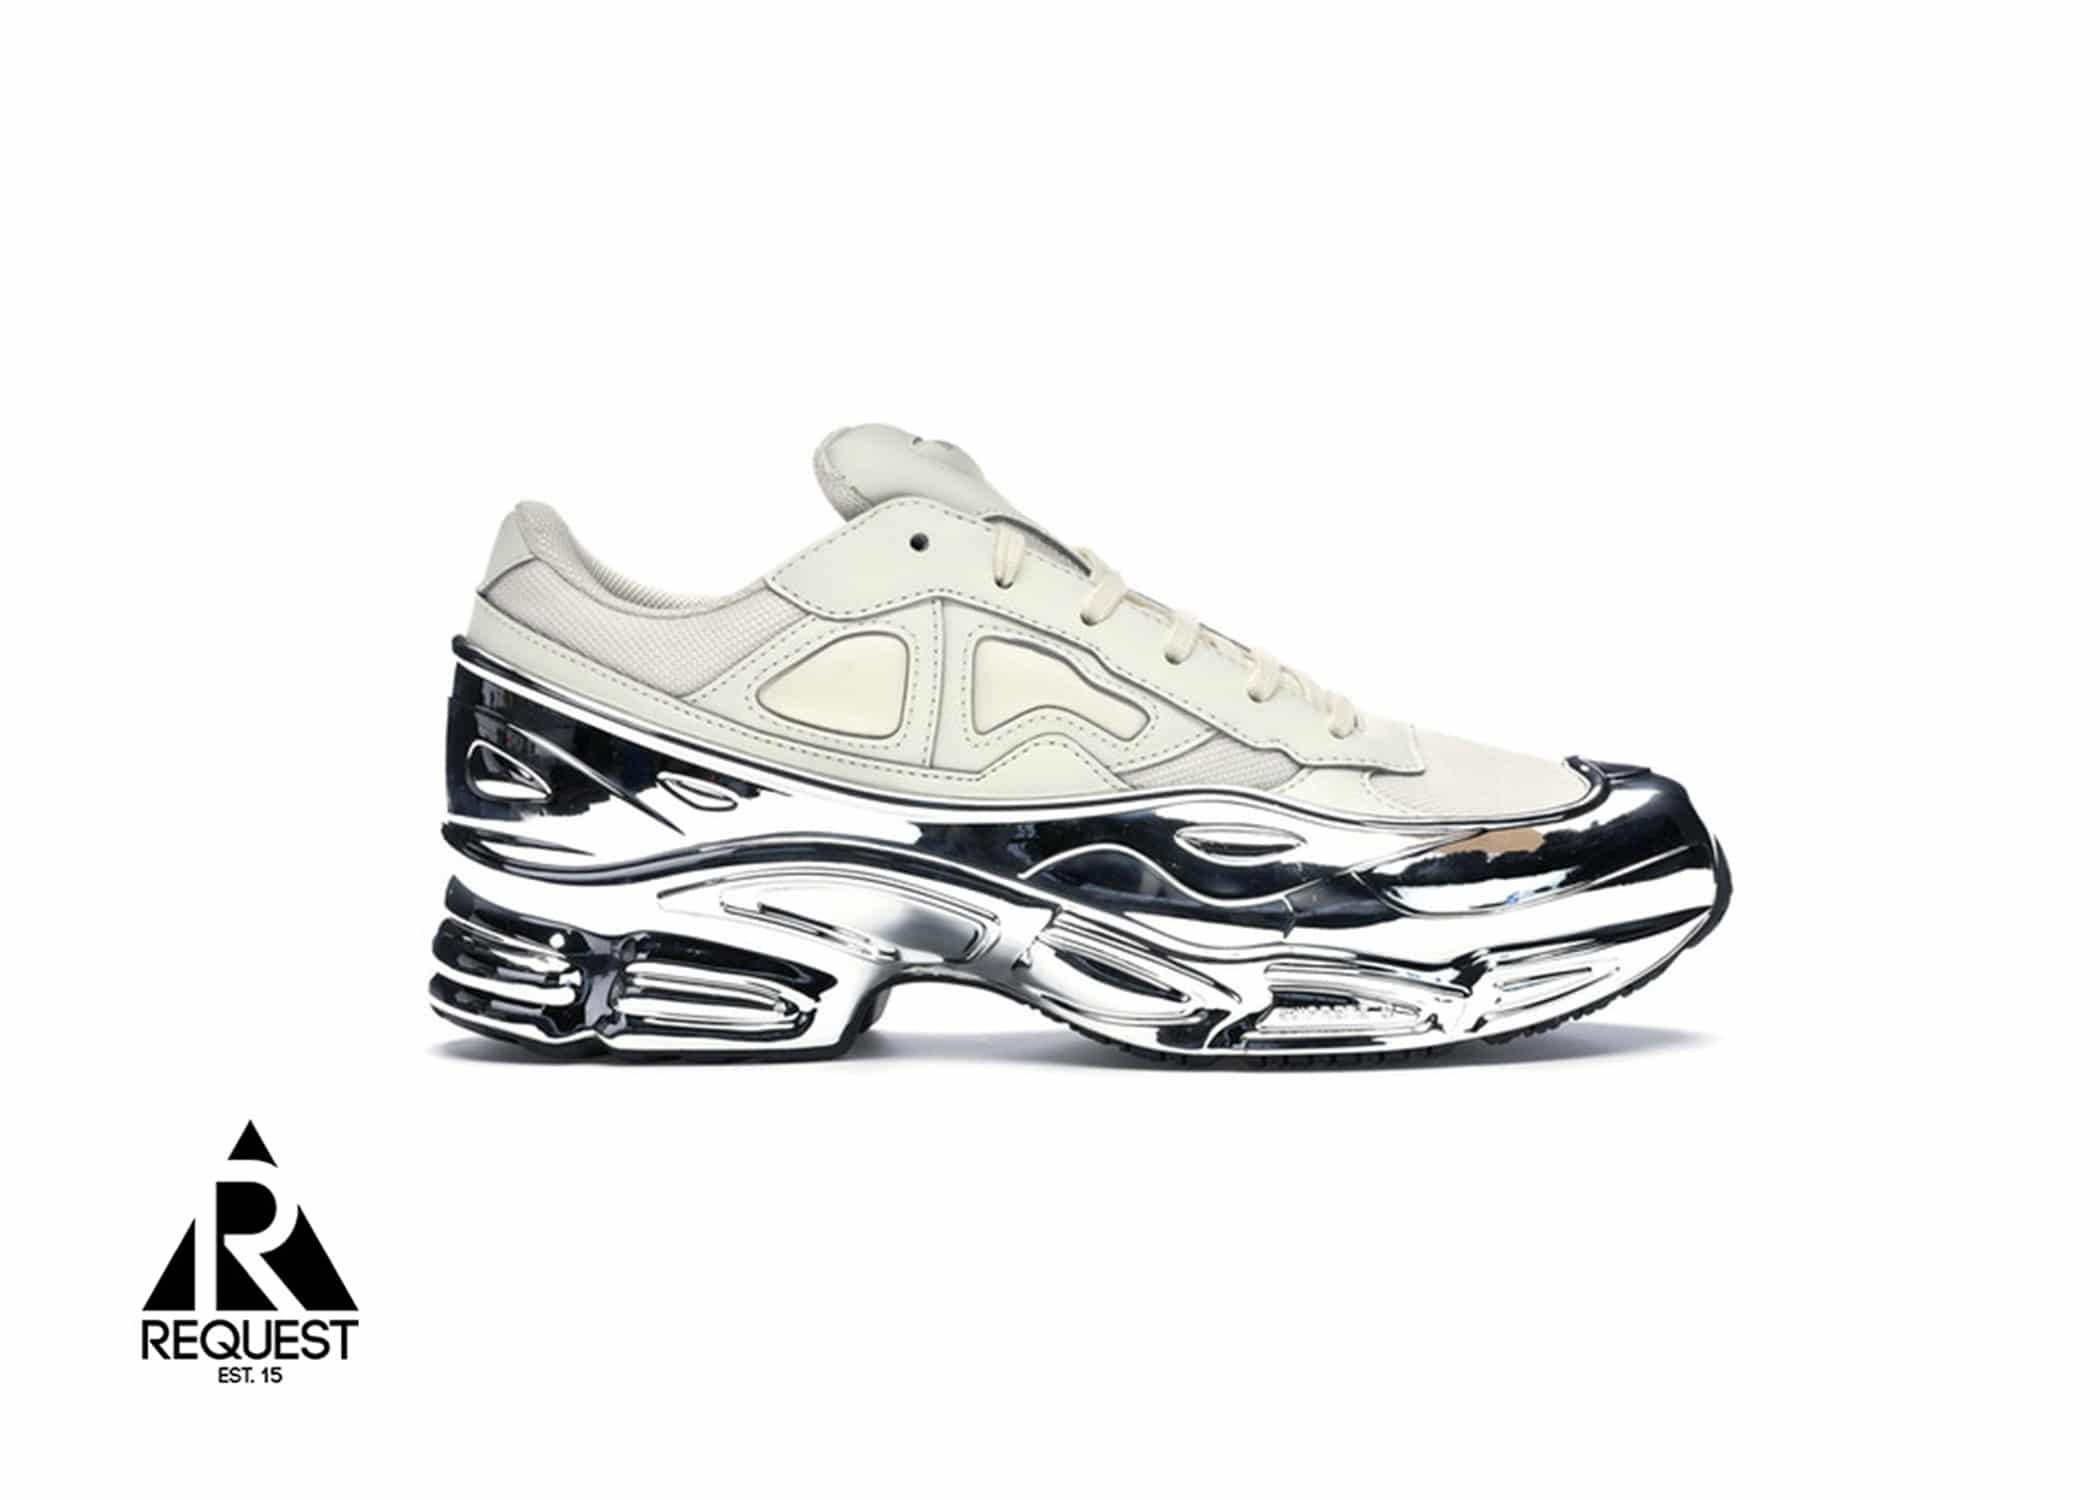 Adidas Ozweego RAF Simons “Silver Metallic”